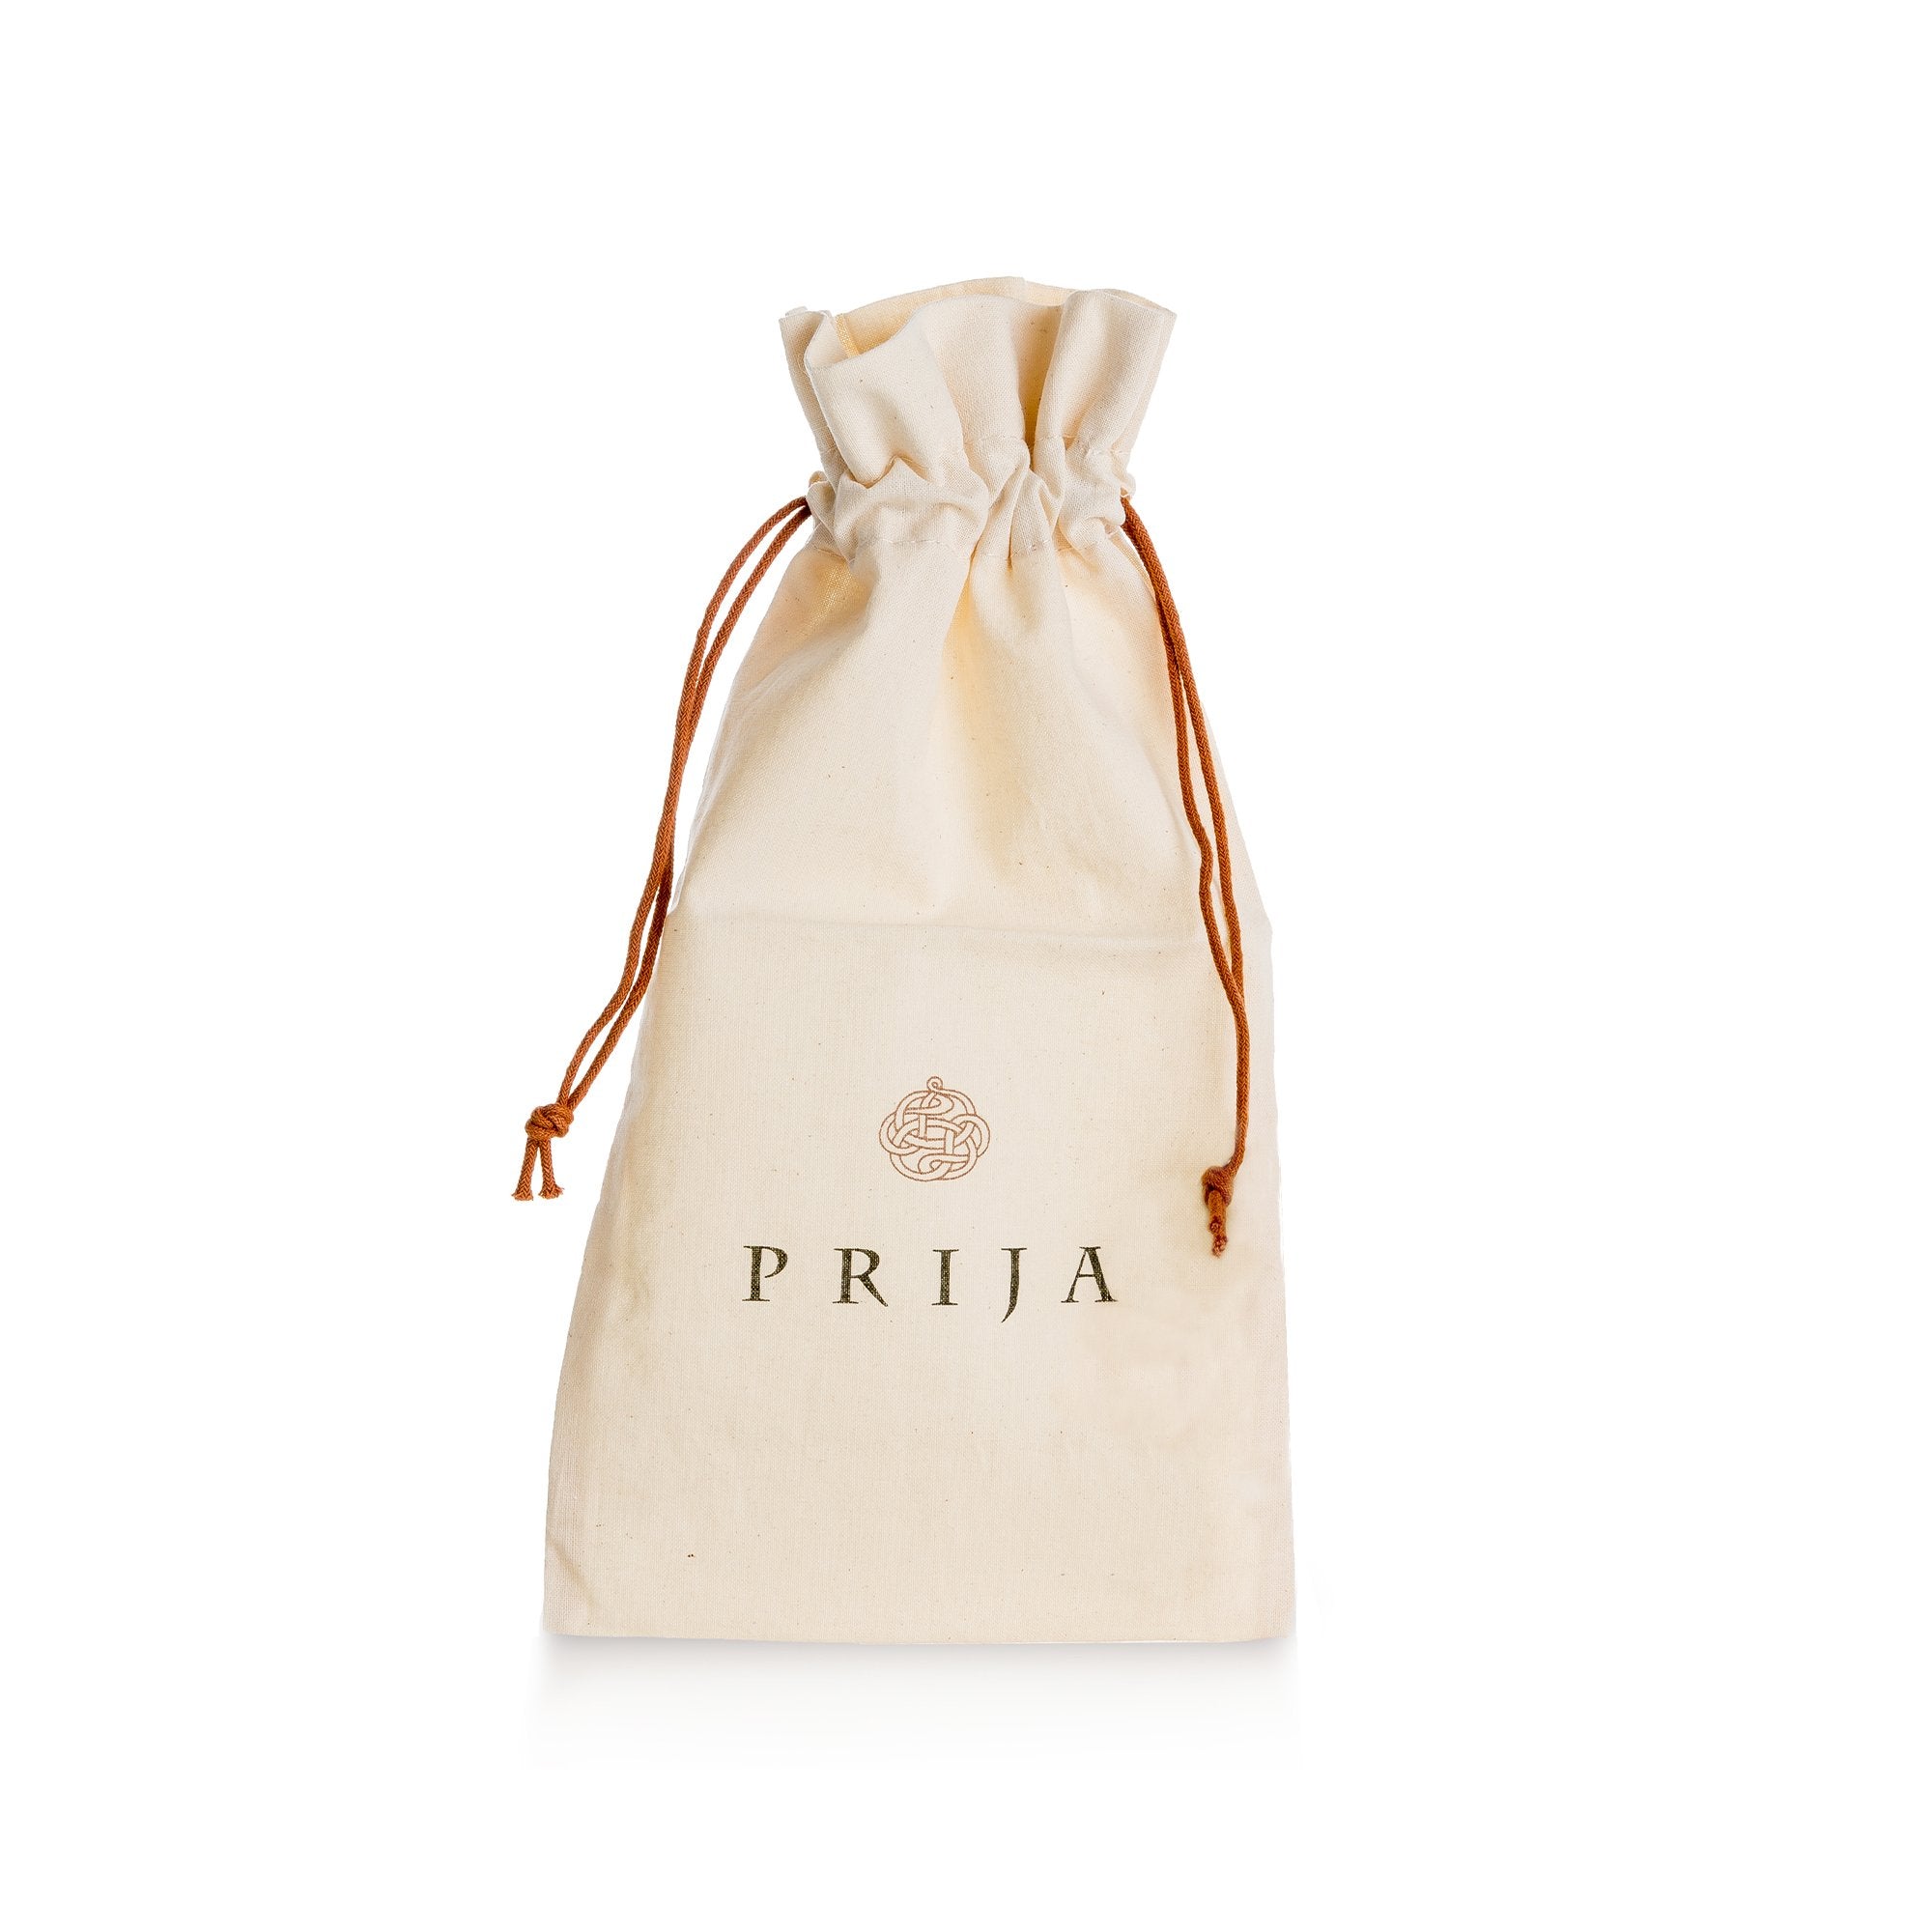 Prija bag in natural cotton